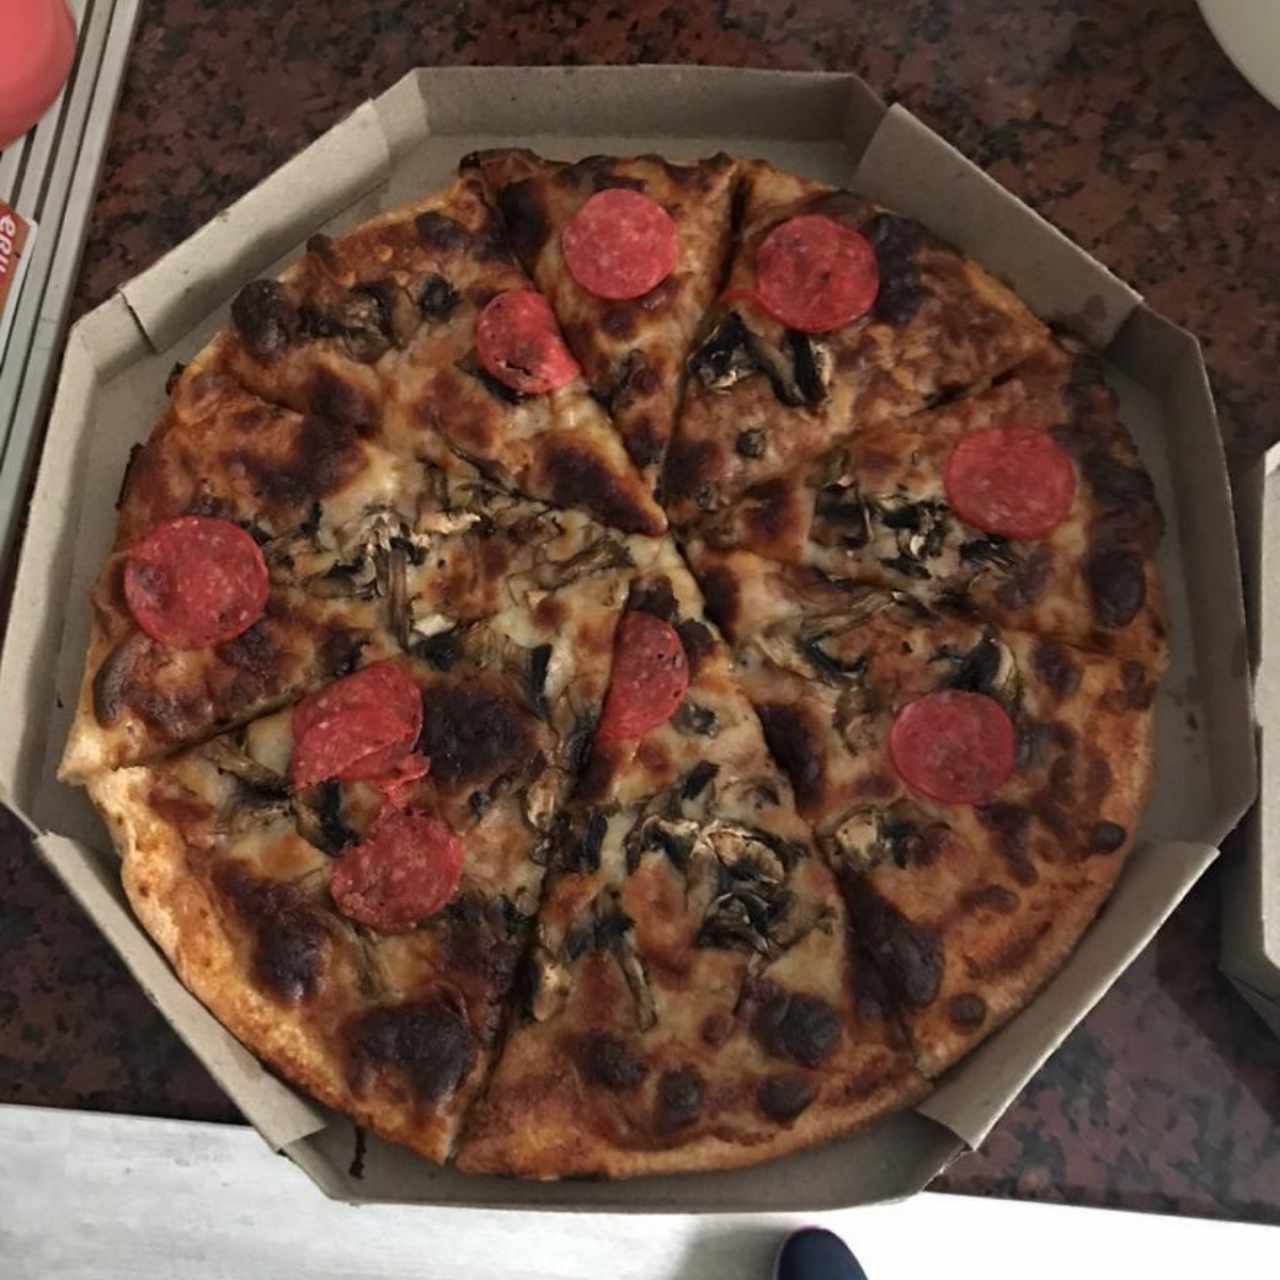 Pizza Familiar de Champiñones y Pepperoni, buena, aunque poco Pepperoni 